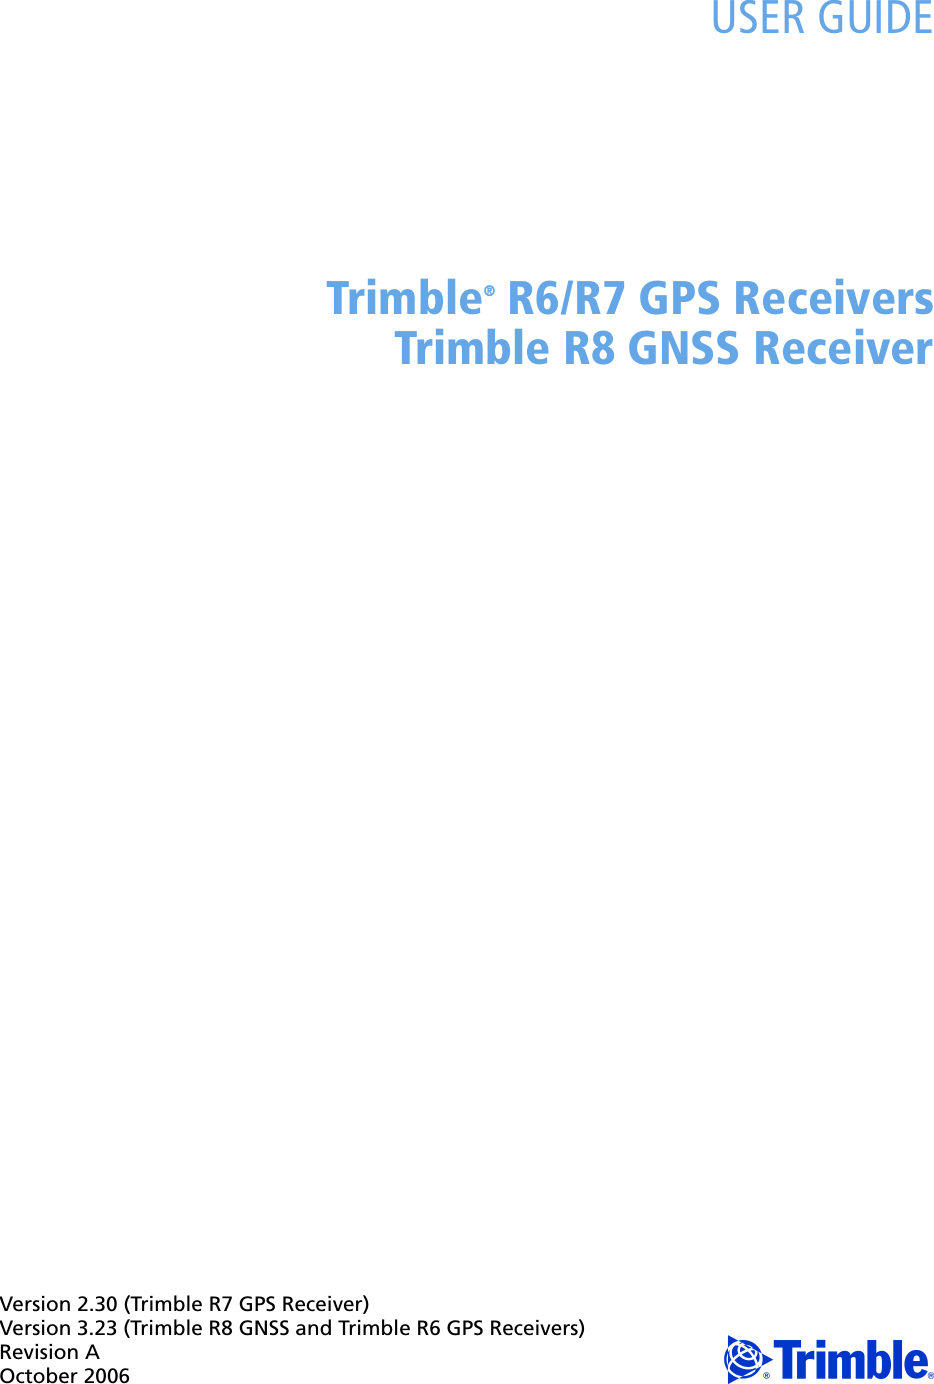 Version 2.30 (Trimble R7 GPS Receiver)Version 3.23 (Trimble R8 GNSS and Trimble R6 GPS Receivers)Revision AOctober 2006 FUSER GUIDETrimble® R6/R7 GPS ReceiversTrimble R8 GNSS Receiver